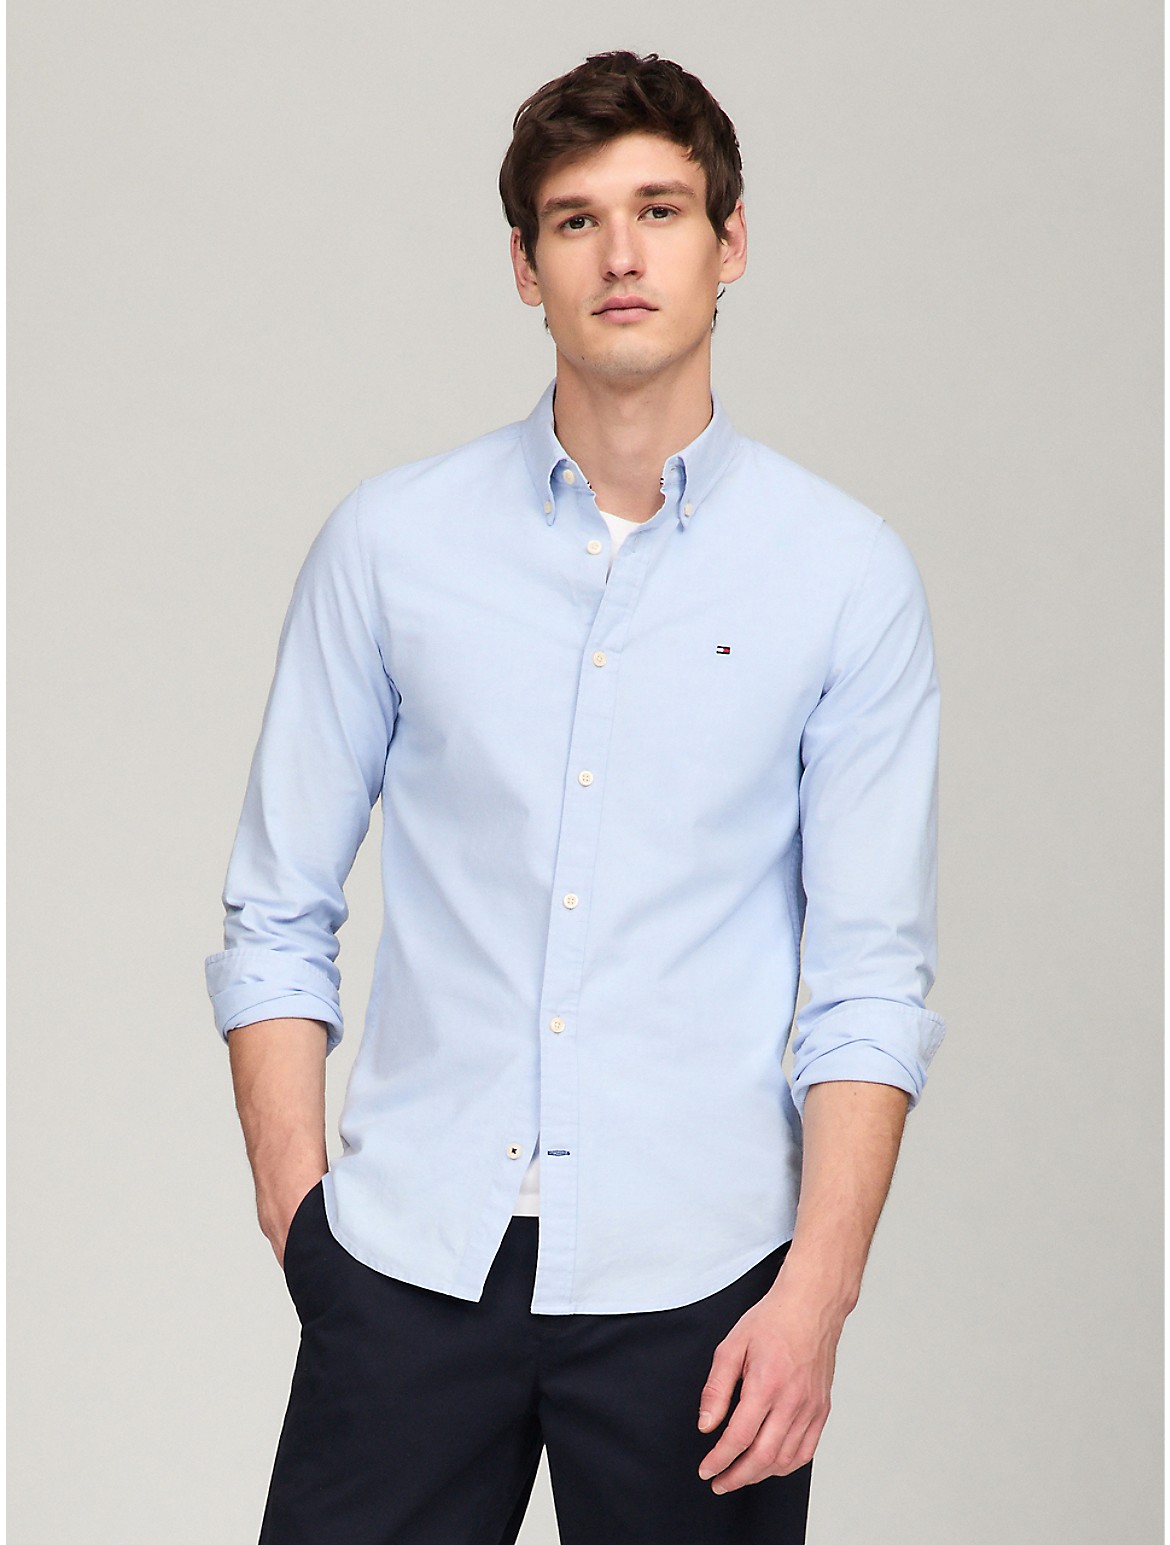 Tommy Hilfiger Men's Slim Fit Oxford Shirt